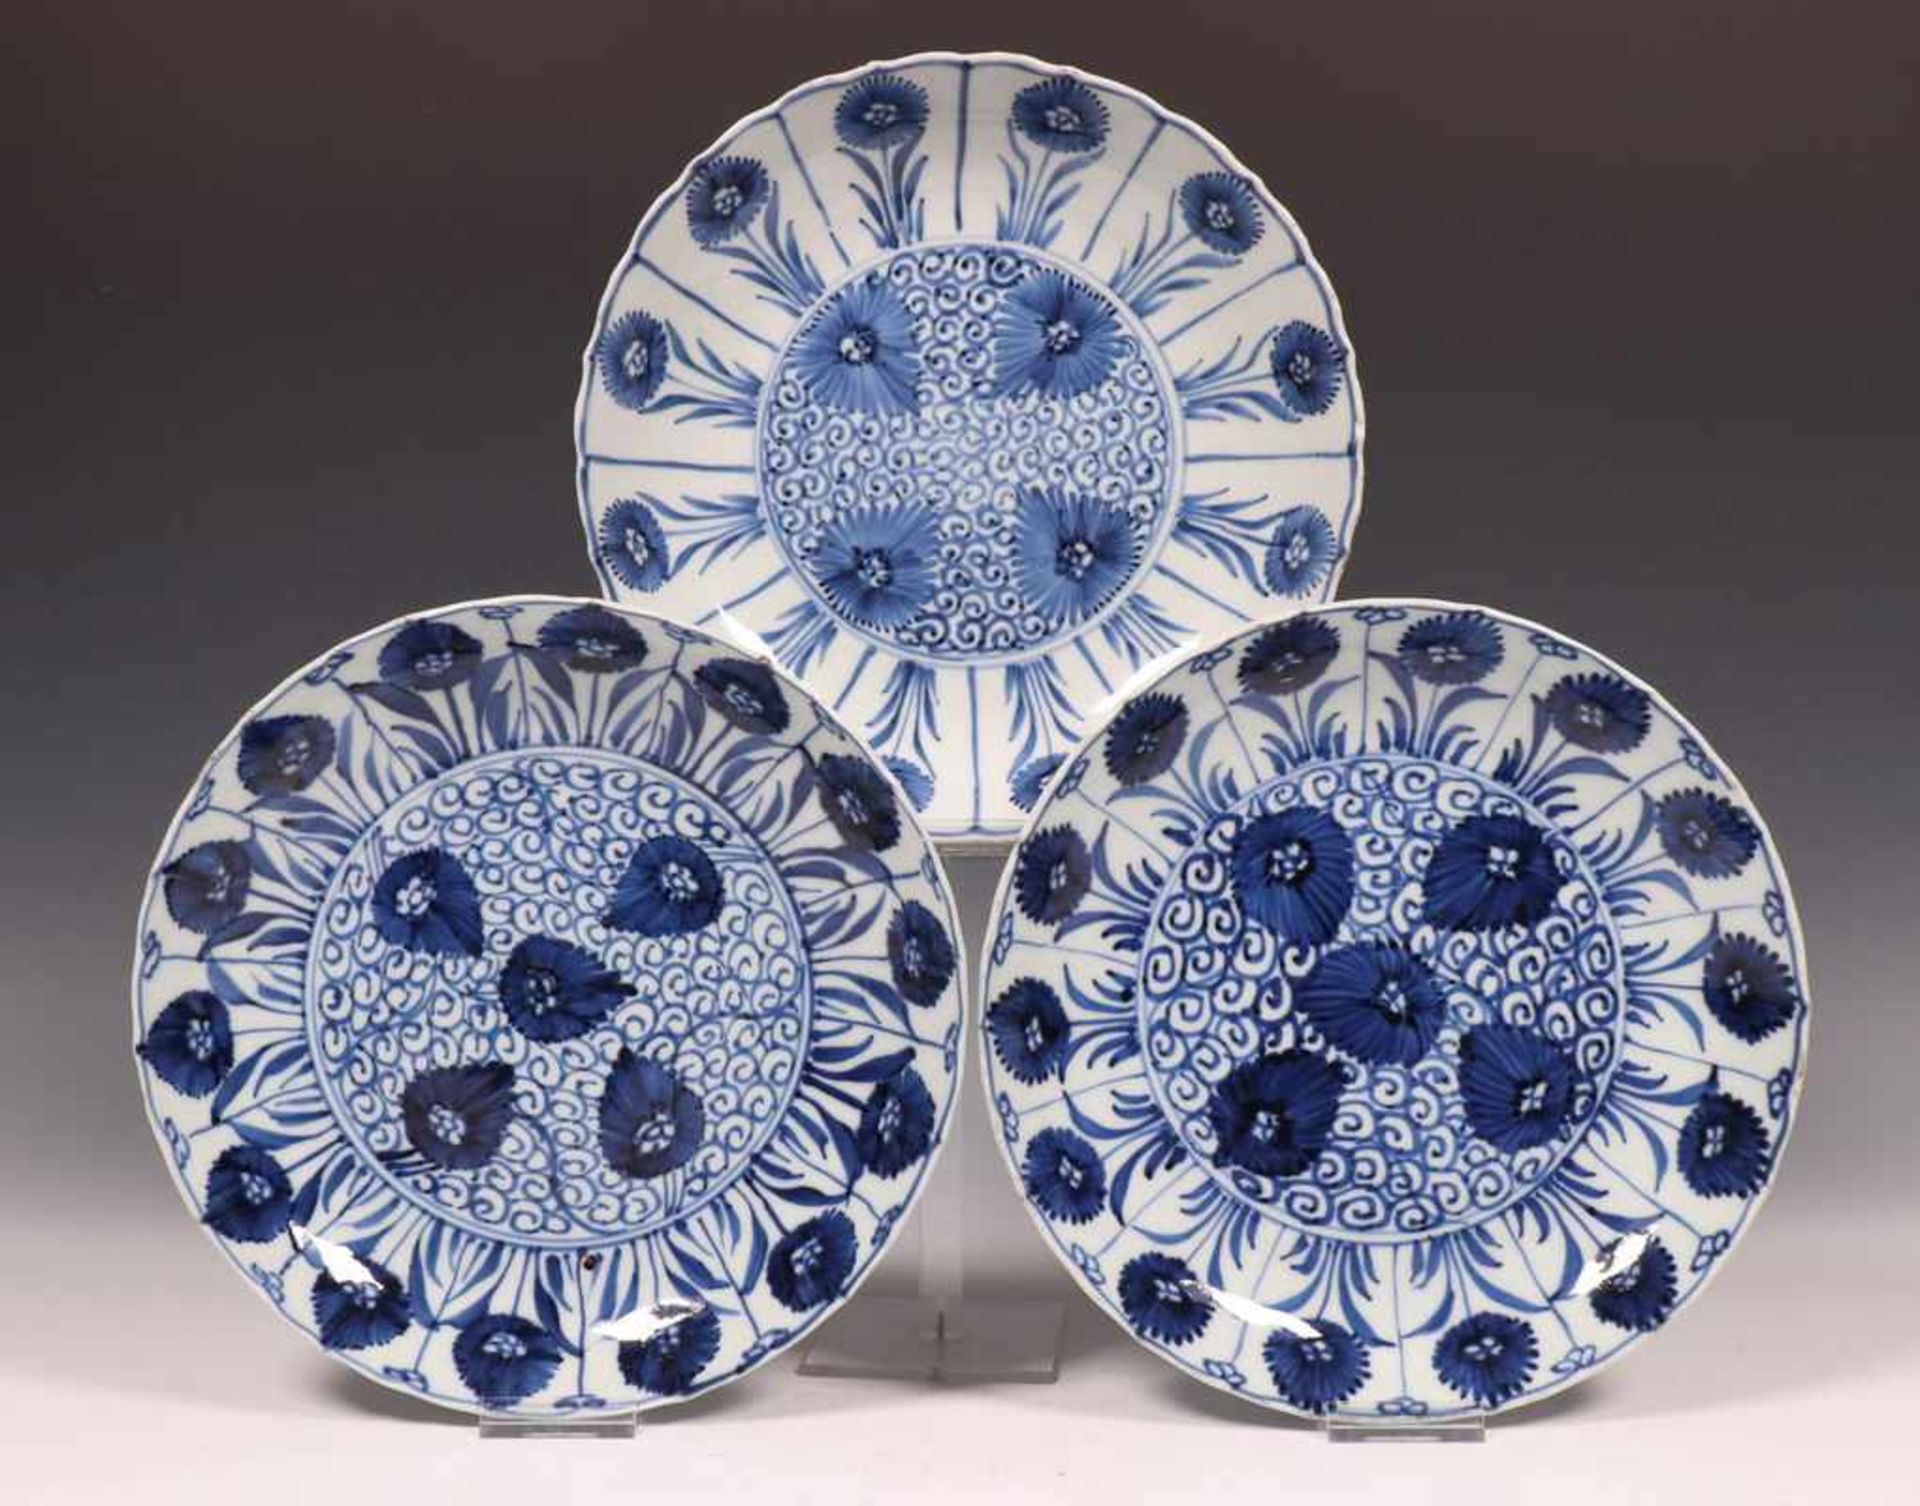 China, blauw-wit porseleinen schotel en drie borden, Kangxi,met decor van zeeegel en asters in